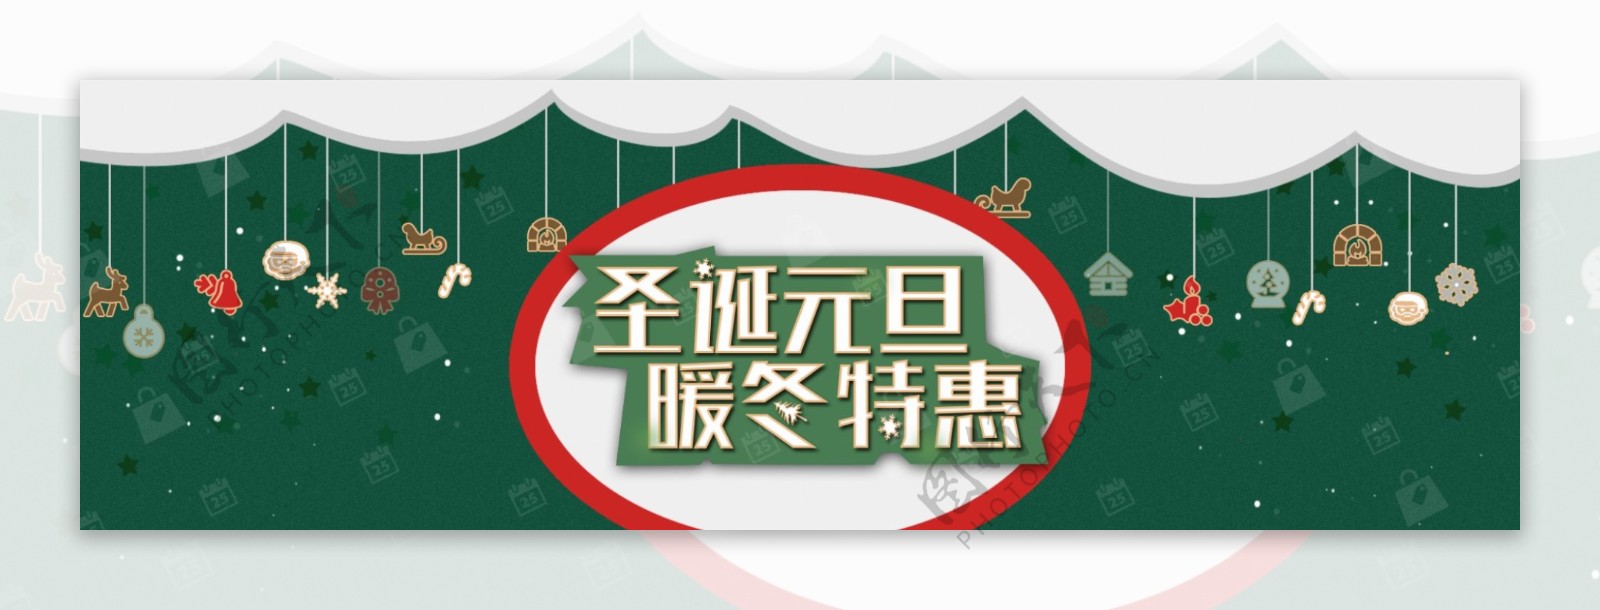 淘宝圣诞节特惠绿色小清新宣传海报